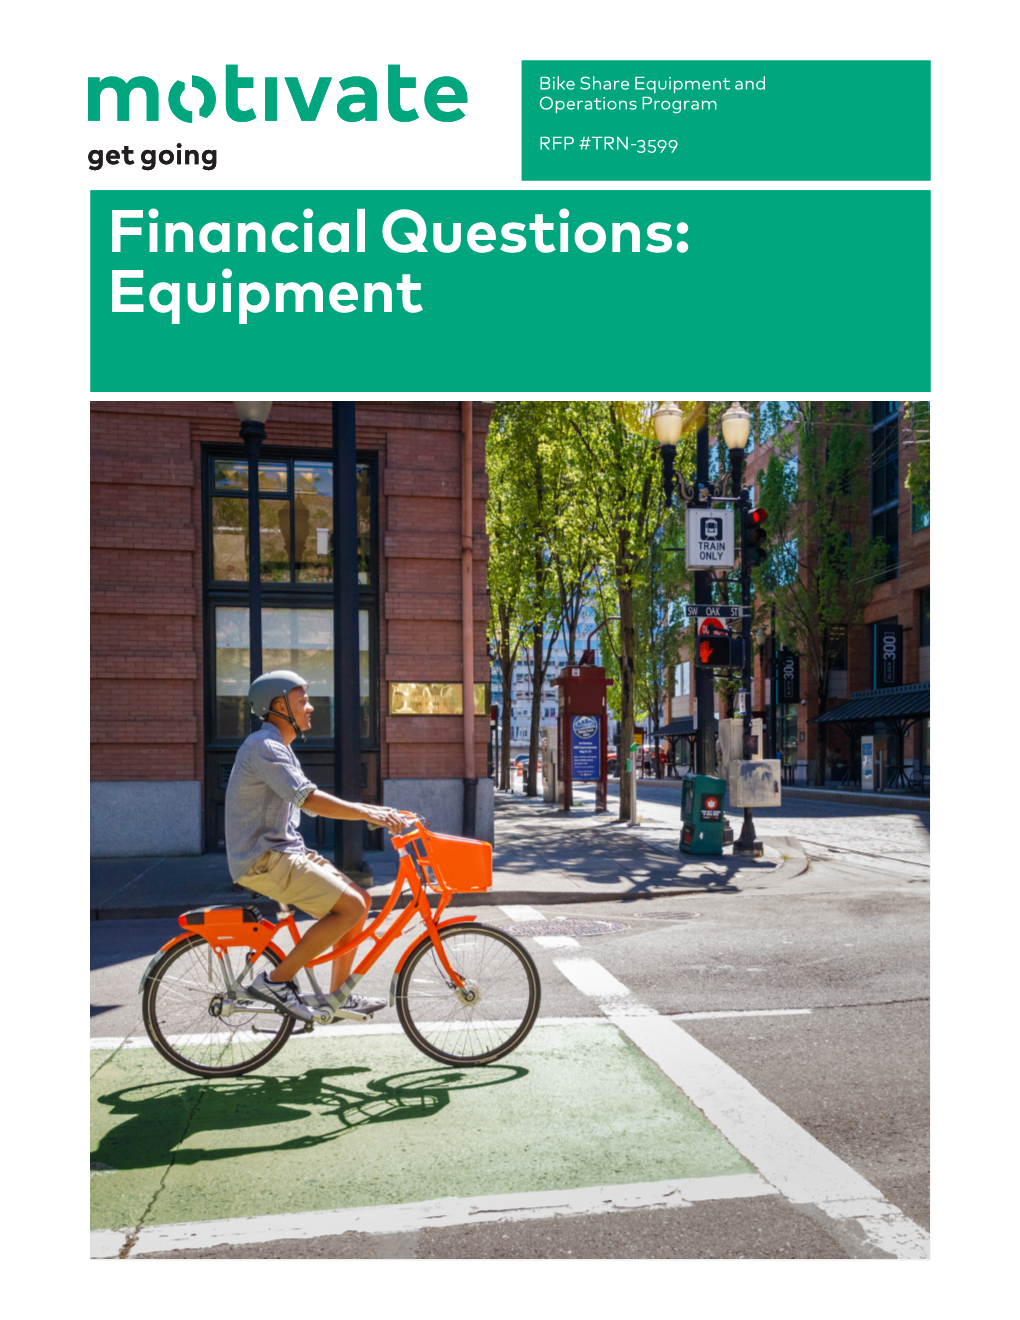 Financial Questions: Equipment Financial Questions: Equipment